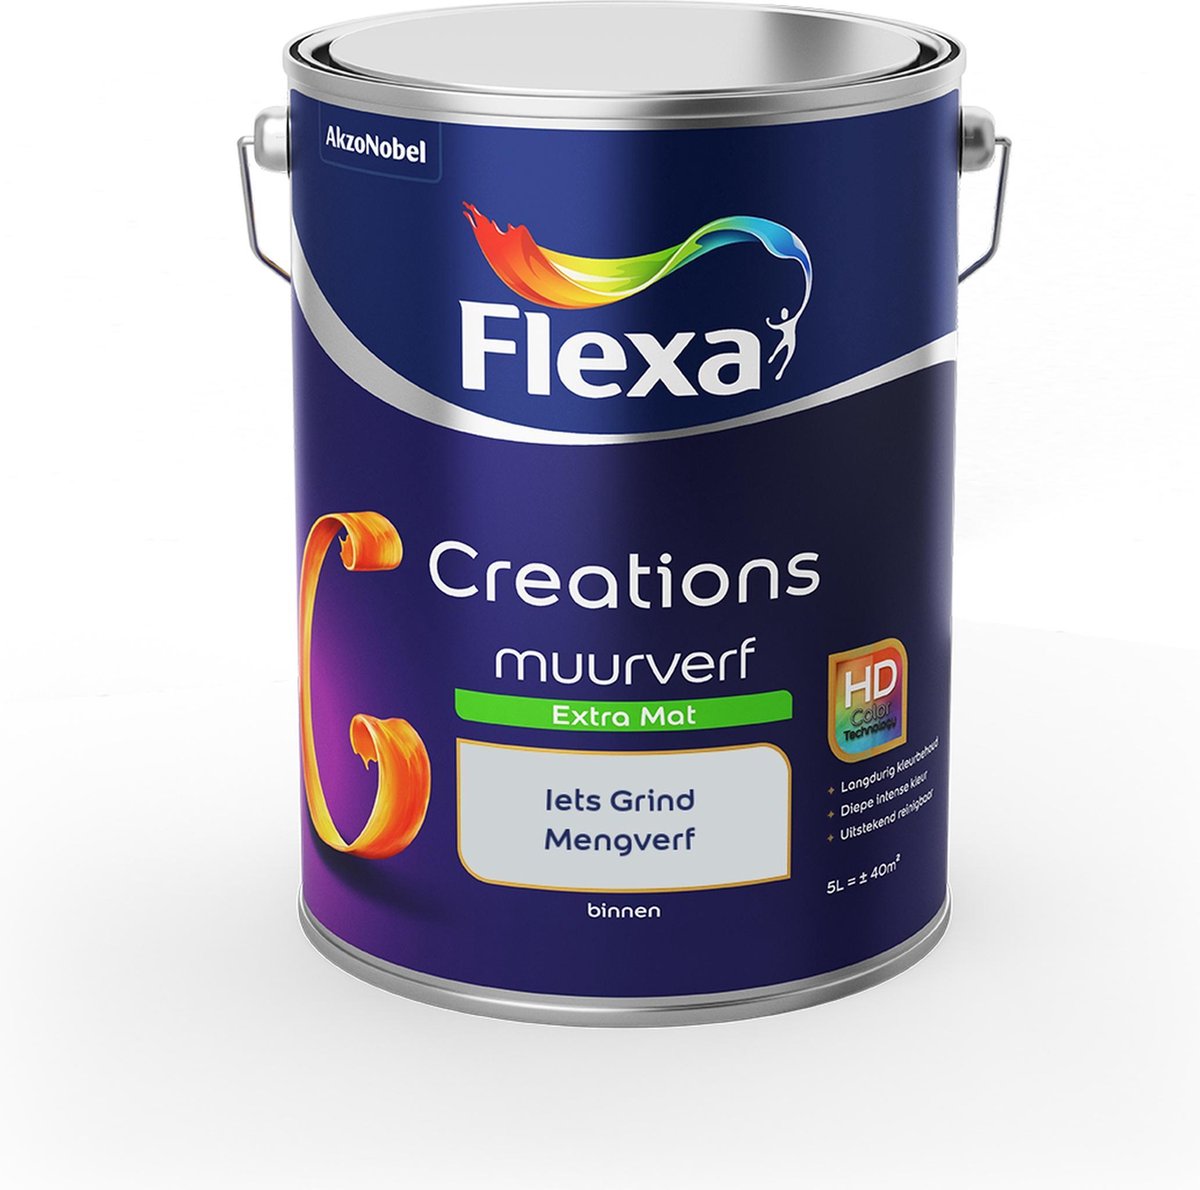 Flexa Creations Muurverf - Extra Mat - Mengkleuren Collectie - Iets Grind - 5 liter